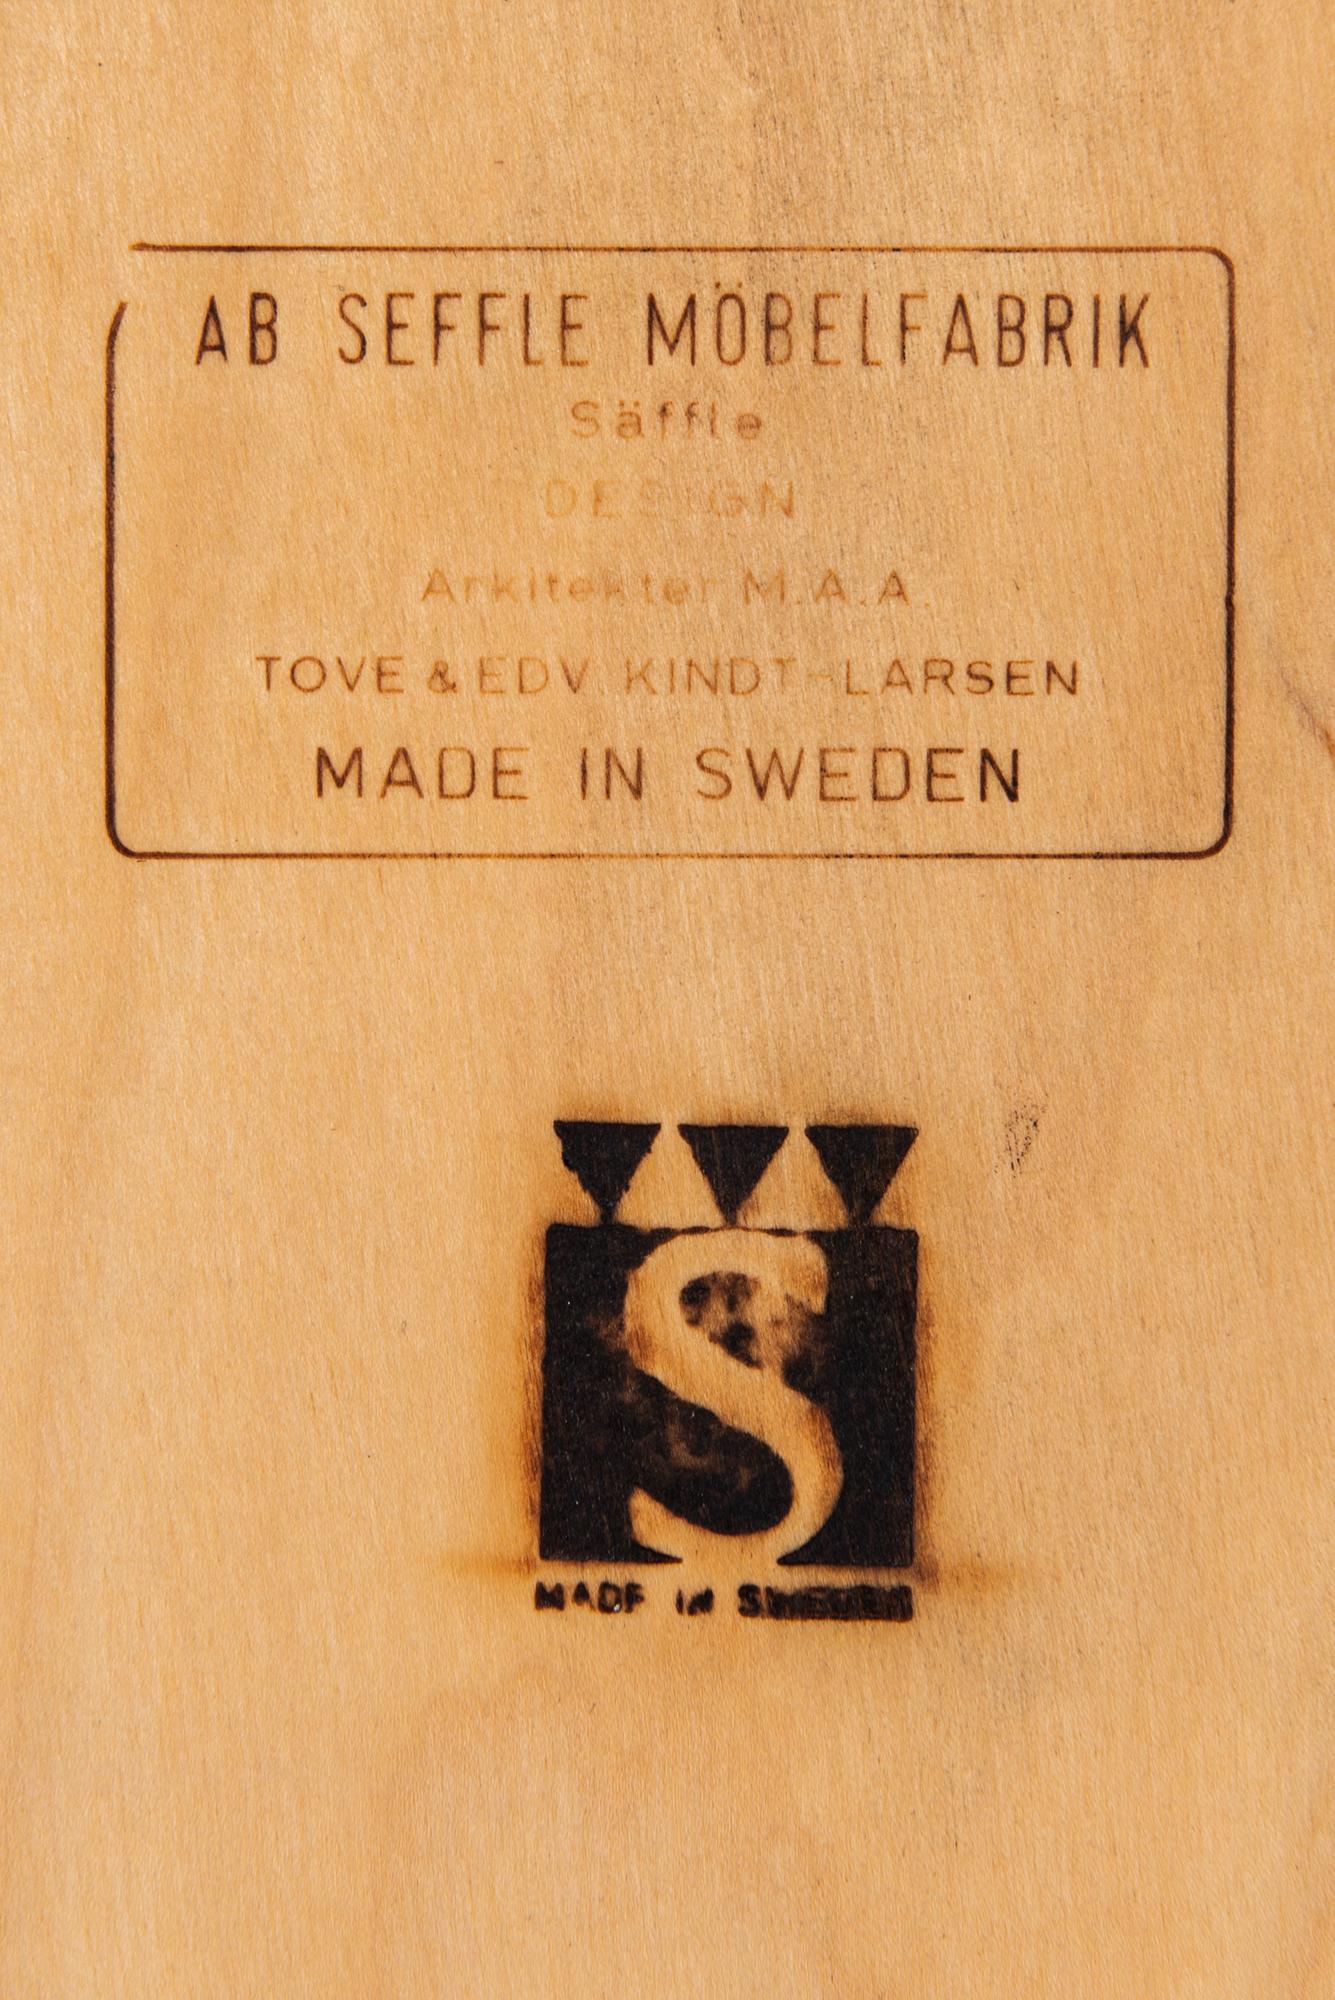 Tove & Edvard Kindt-Larsen Sideboard by Seffle Möbelfabrik in Sweden 5